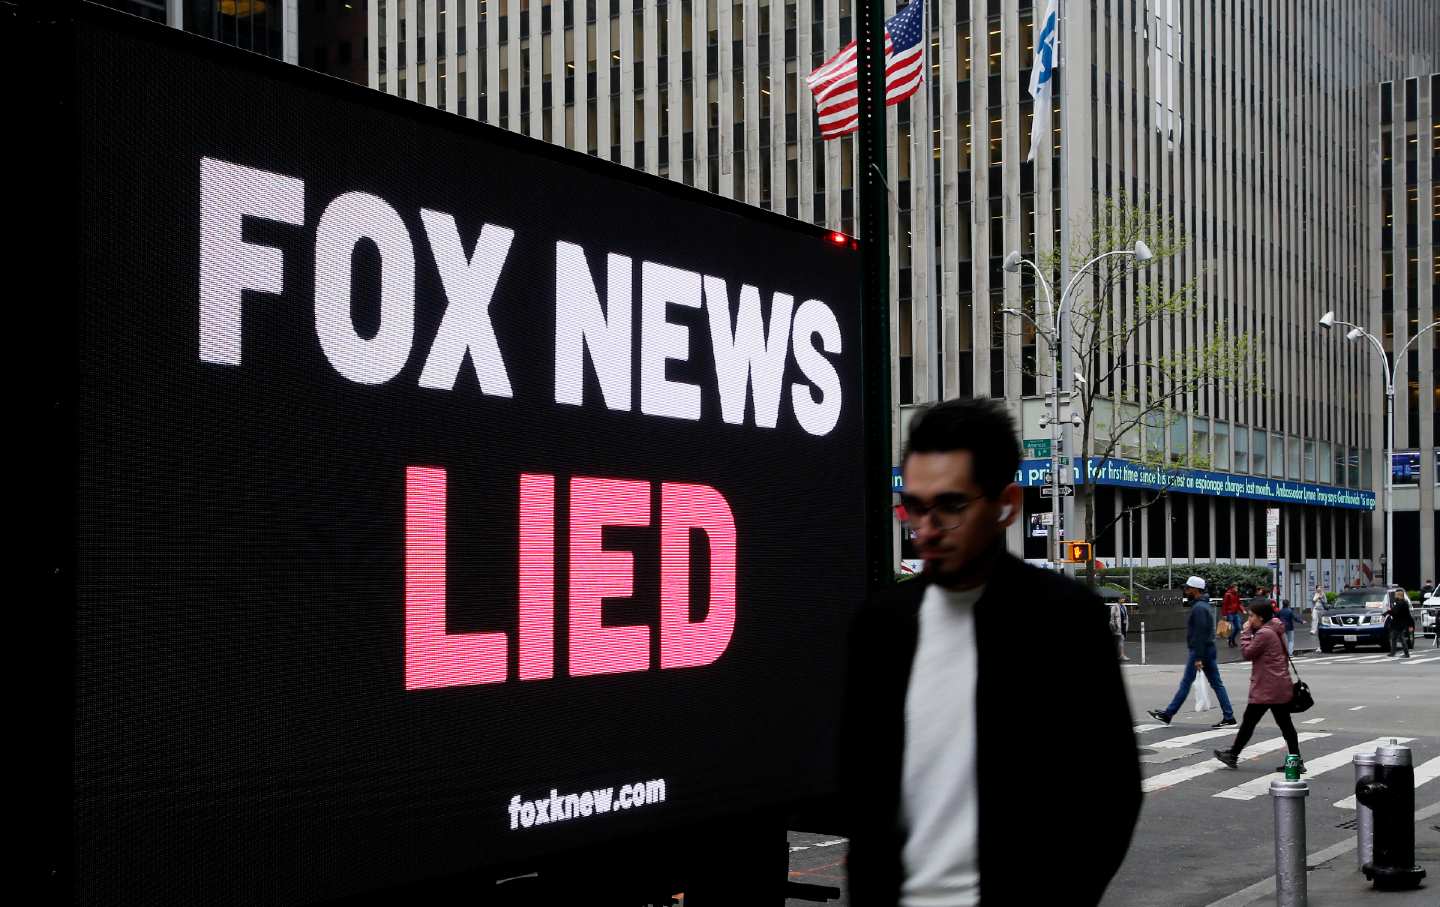 “FOX NEWS LIED” billboard